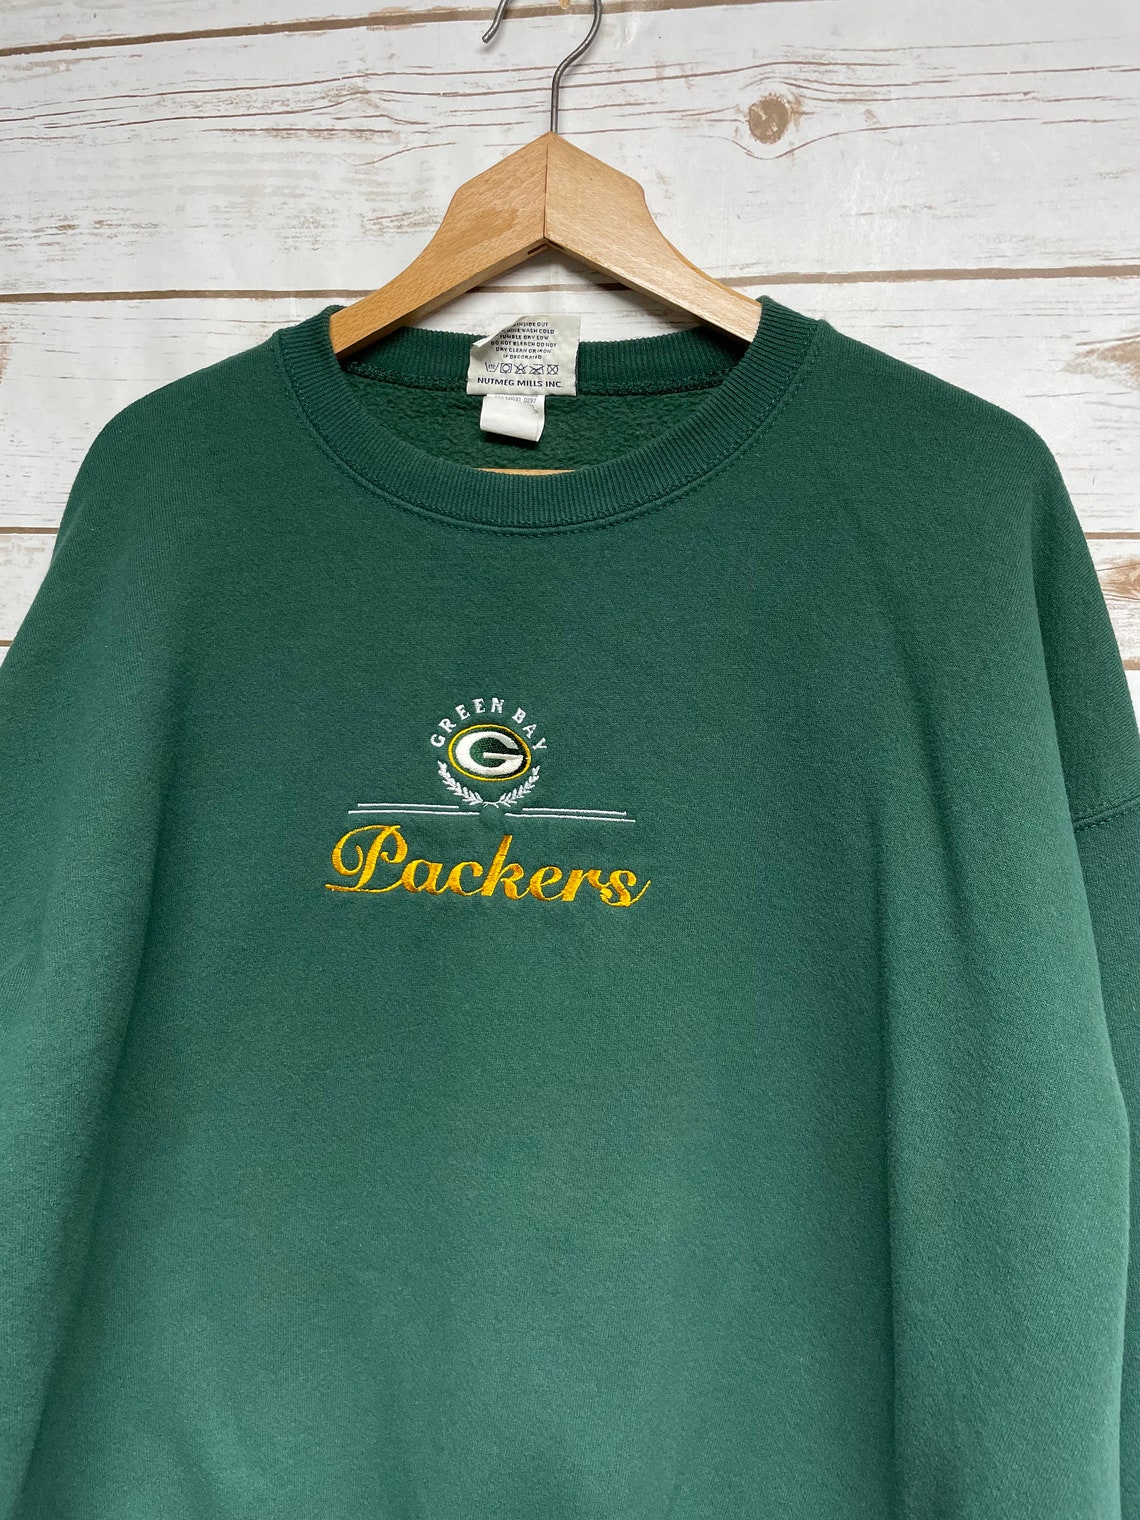 Vintage 90's Green Bay Packers crewneck sweatshirt Packers | Etsy